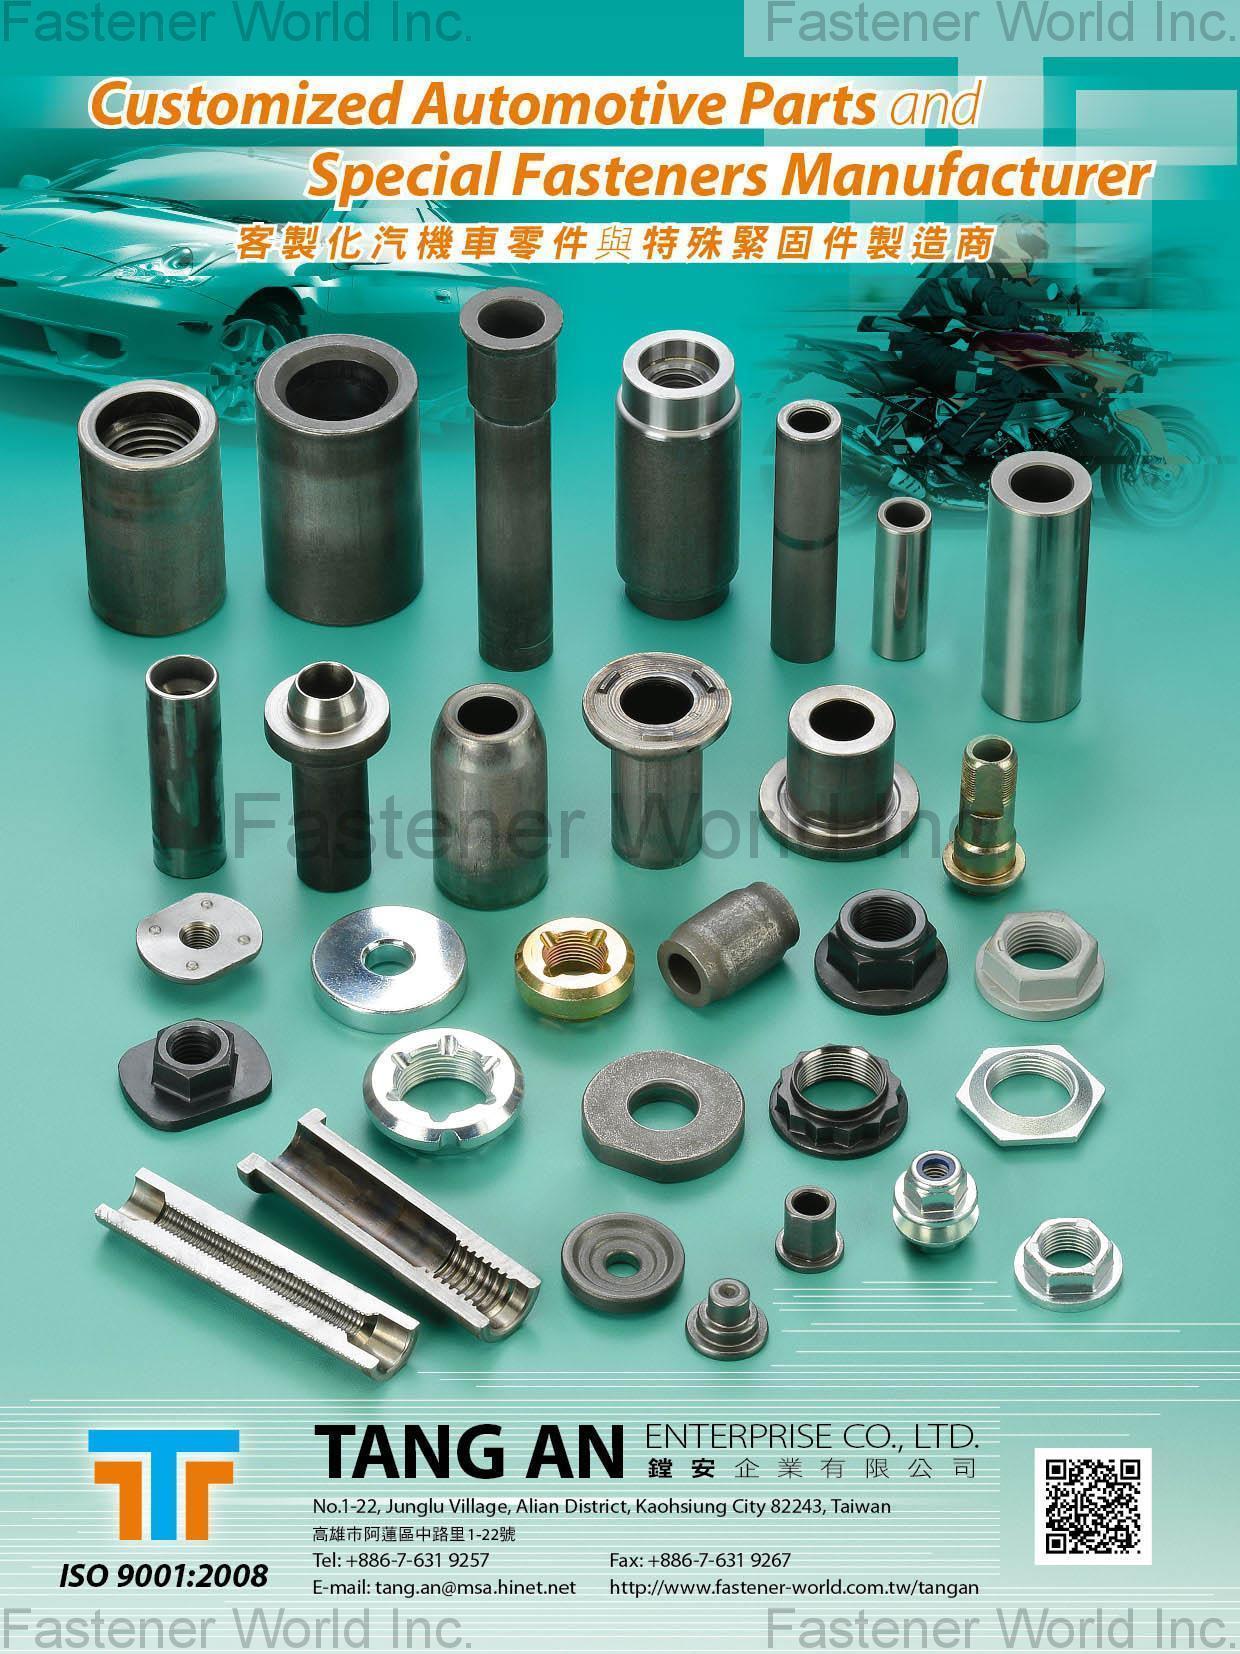 TANG AN ENTERPRISE CO., LTD. , Customized Automotive Parts, Special Fasteners , Automotive Parts